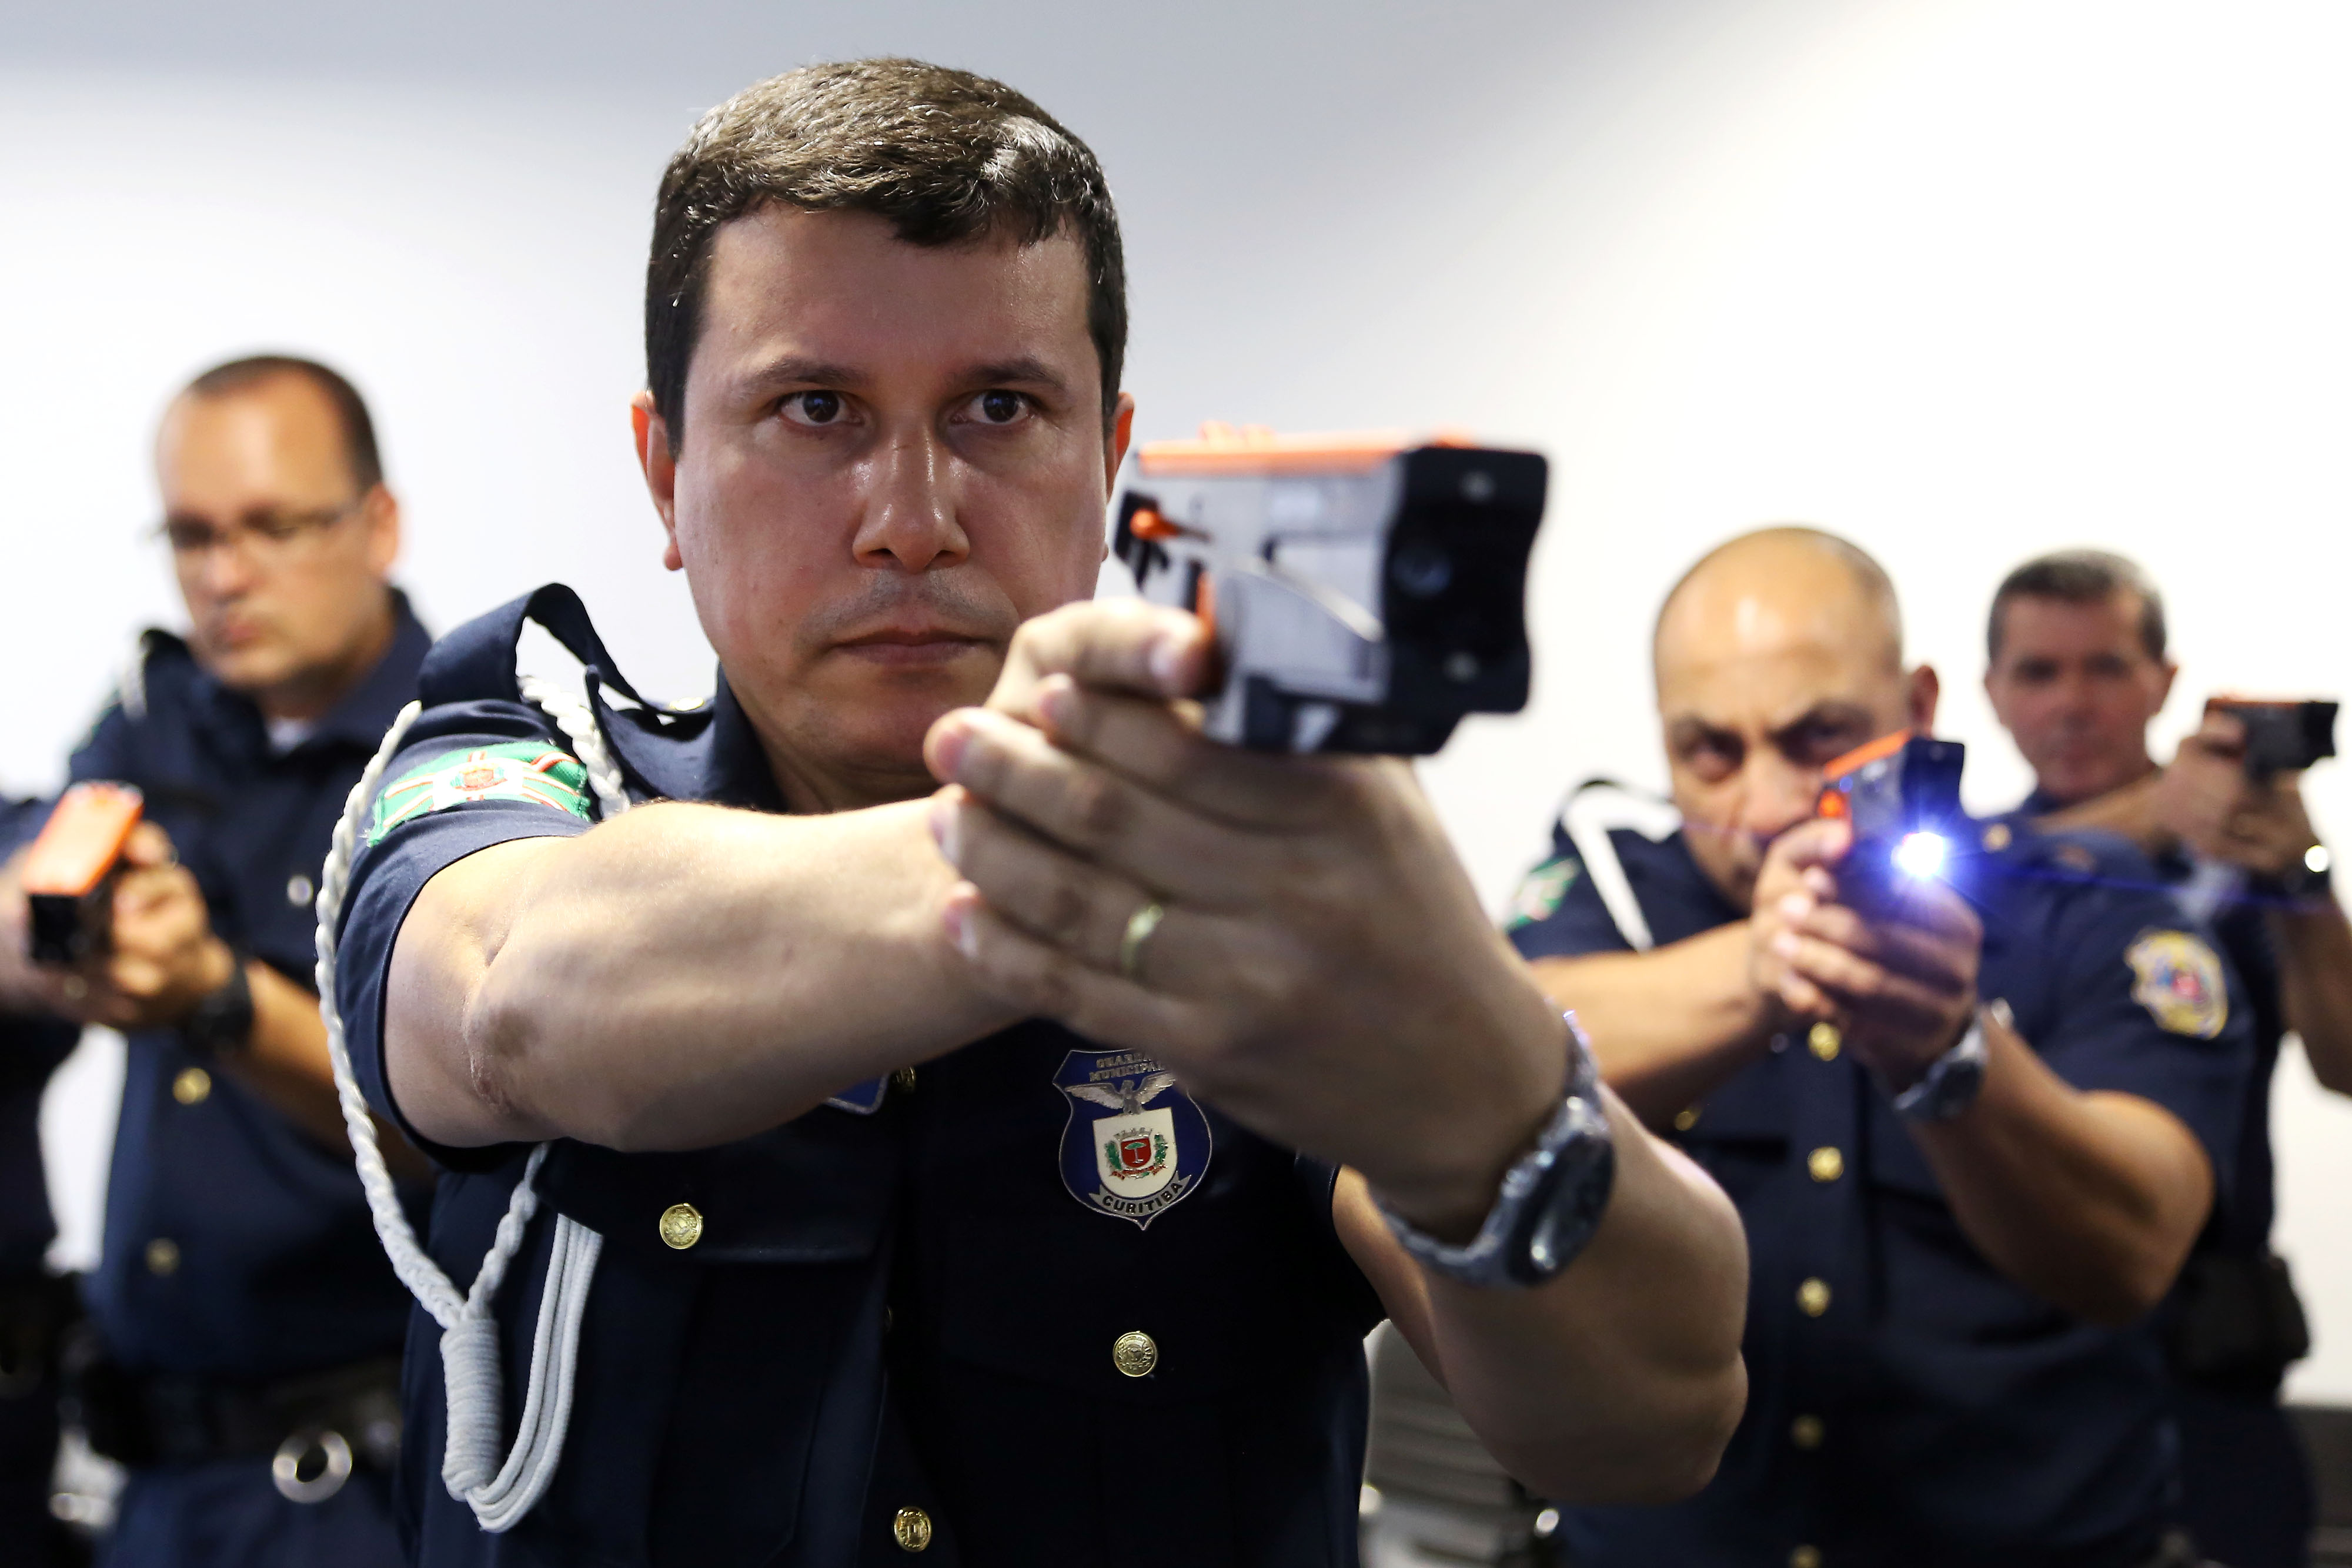 Guardas municipais treinam uso de arma elétrica - Prefeitura de Curitiba